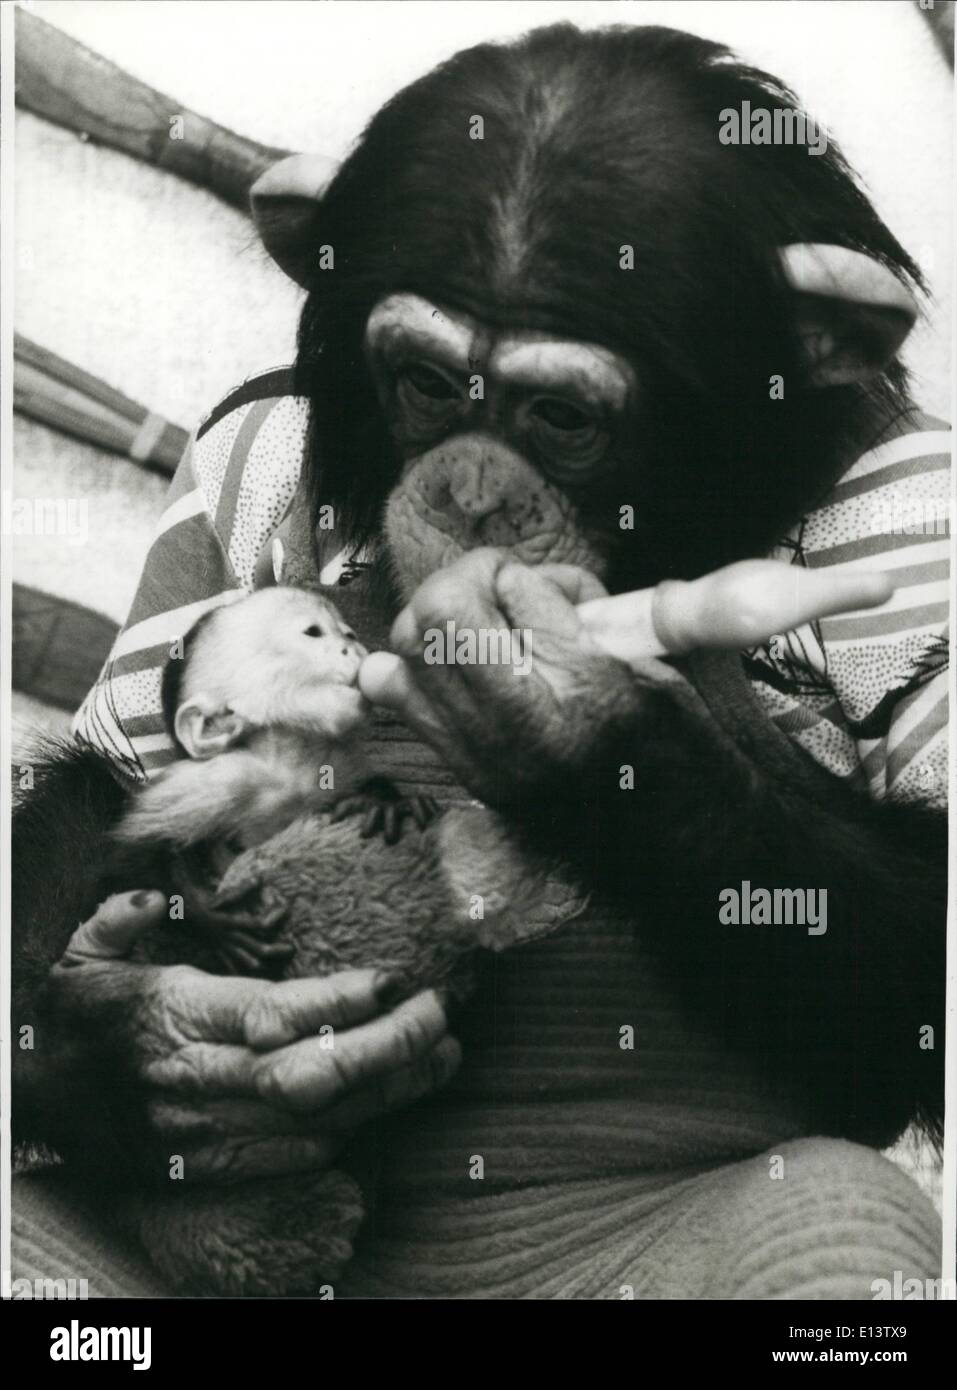 27 mar 2012 - Uno scimpanzé si prende cura di una scimmia cappuccino: uno scimpanzé felice di vita allo zoo di Duisburg/Germania Ovest è un molto gentili padri sostitutivi. Dopo la scimmia cappuccino Taoo è stato ripudiato dalla propria madre, i due anni di scimpanzé si prese cura degli orfani. Felice non solo mantenere con sollecitudine un occhio su questo piccolo e rock a dormire, ma egli dà anche la piccola scimmia baby il biberon (foto), in modo che esso diventi un cresciuti Cappuccini, presto. Questo tipo di comportamento è molto straordinaria Foto Stock